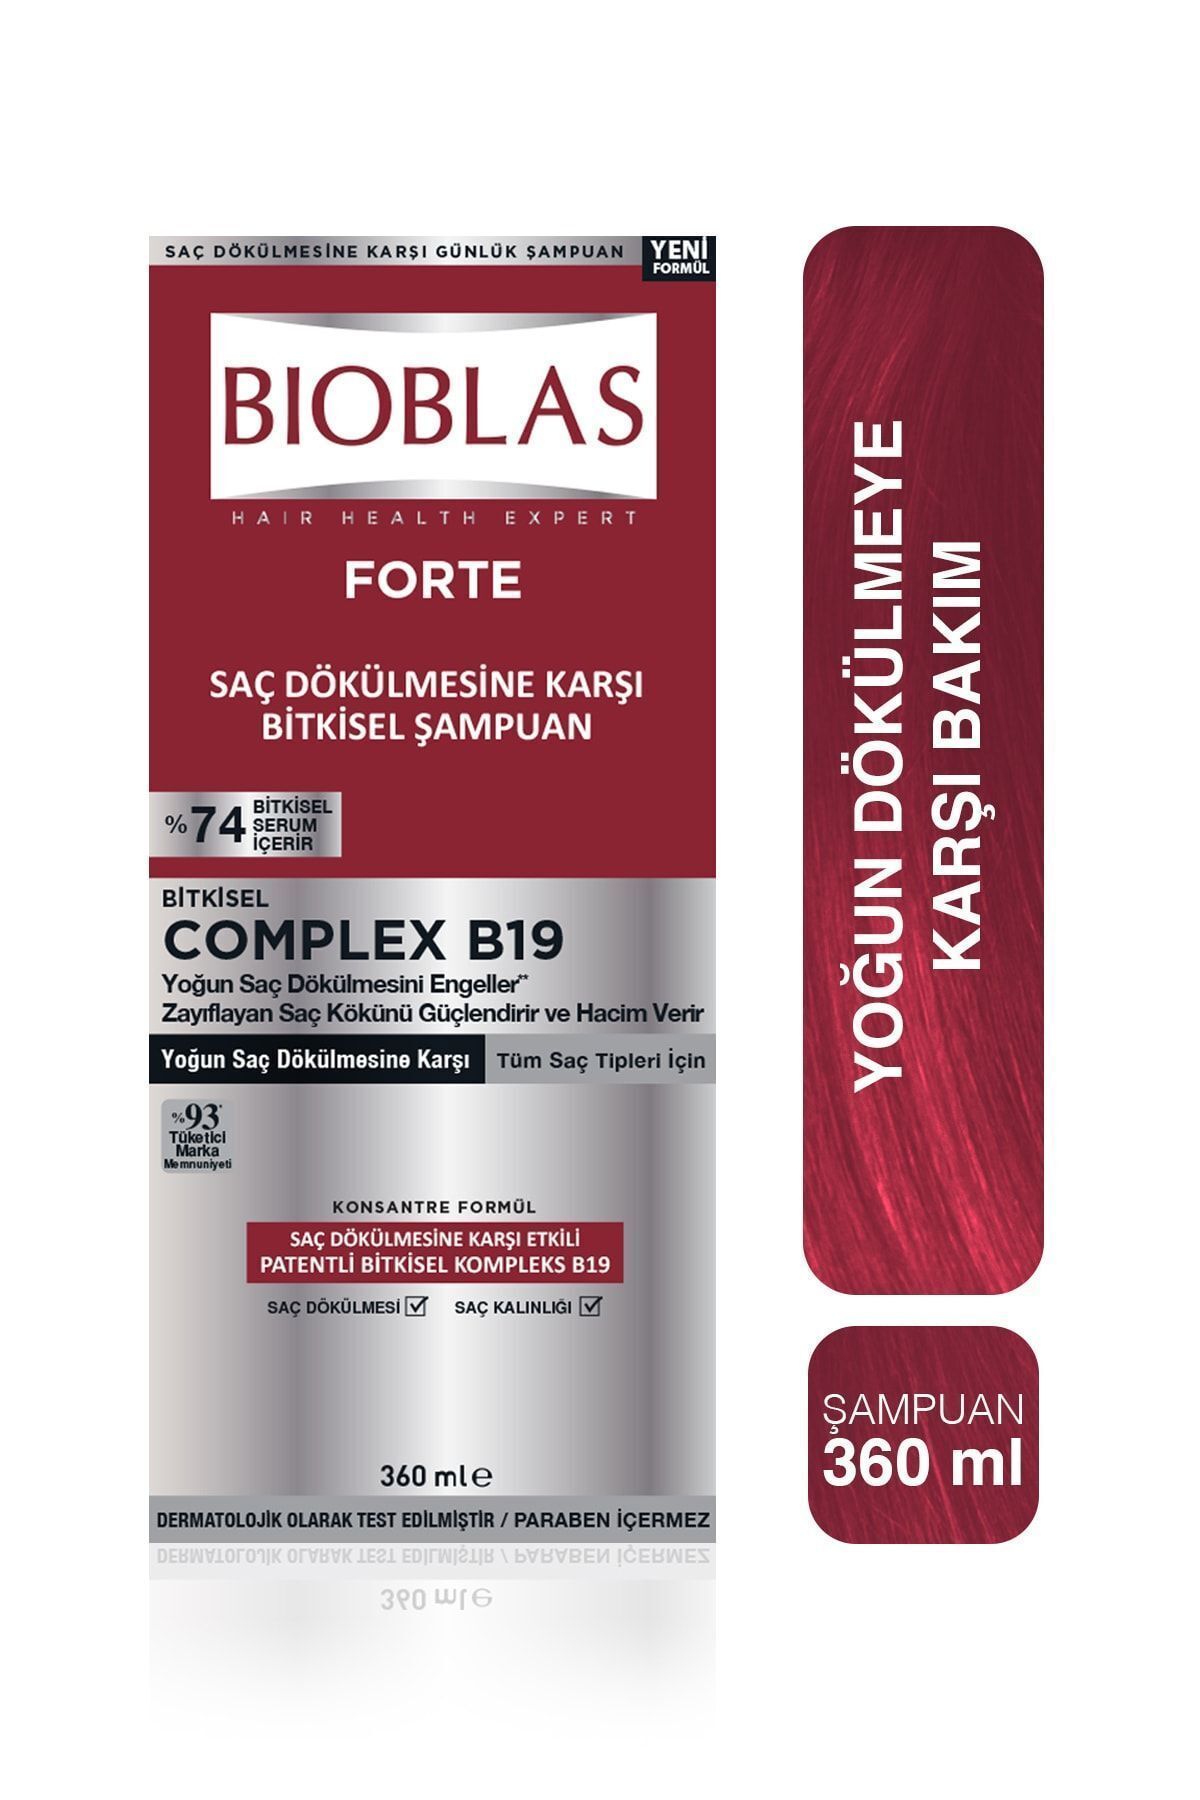 Bioblas Forte Şampuan 360 ml - Yoğun Dökülme Şampuanı